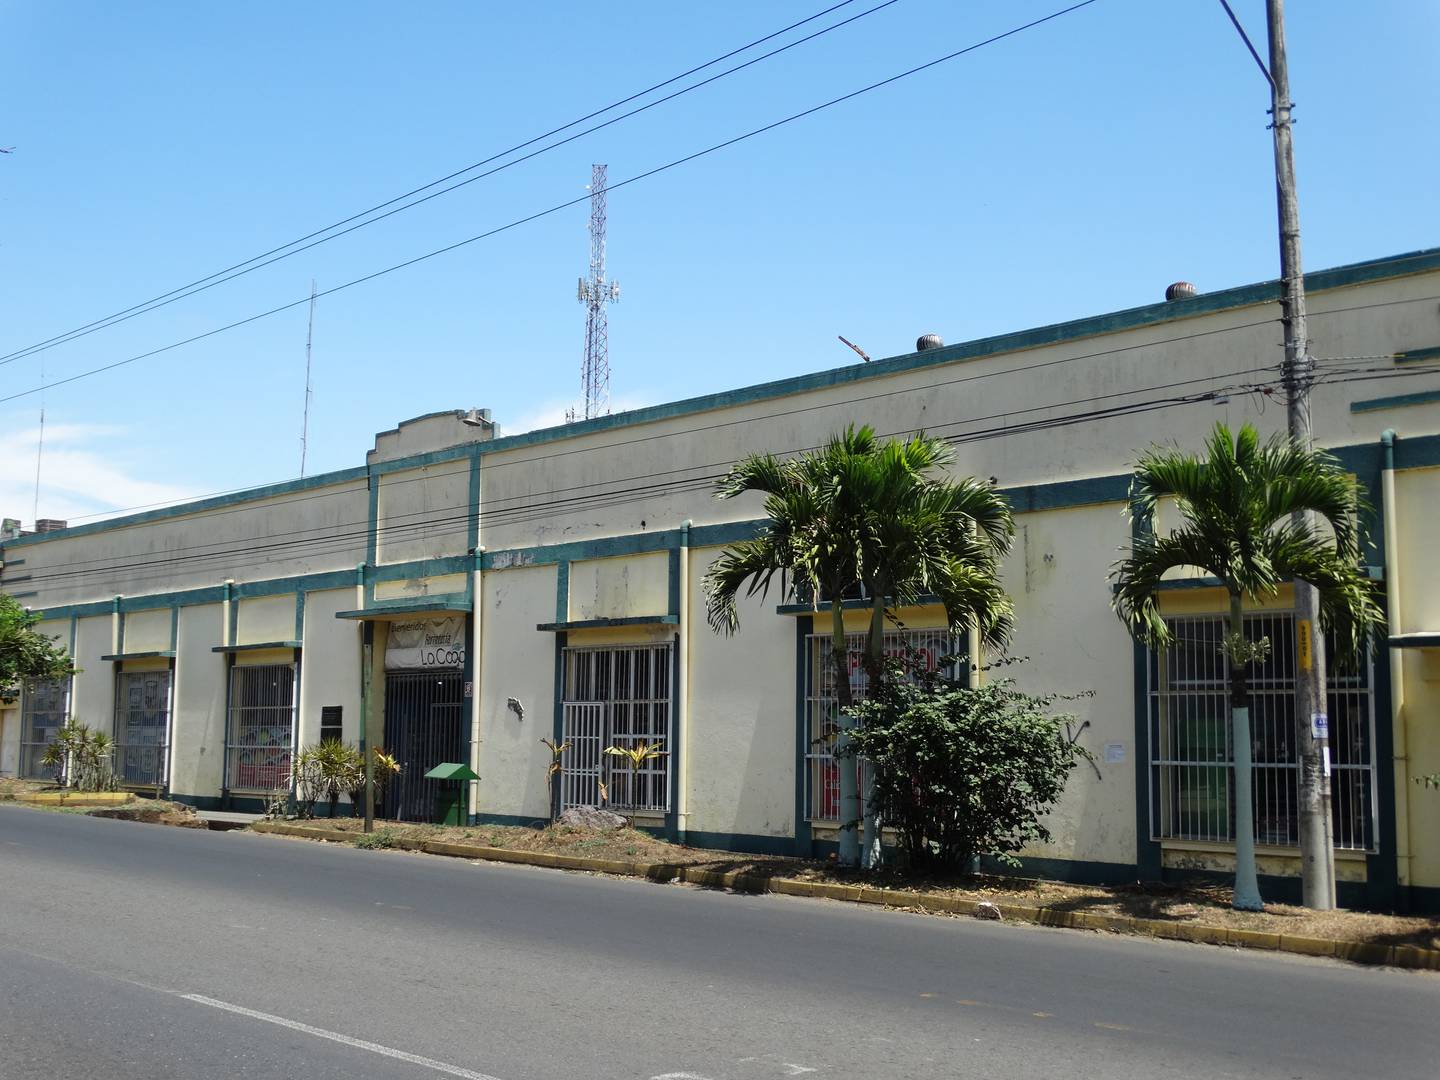 Esta es la fachada de la antigua Cooperativa Tabacalera de Palmares.

Fotografía: Centro de Patrimonio